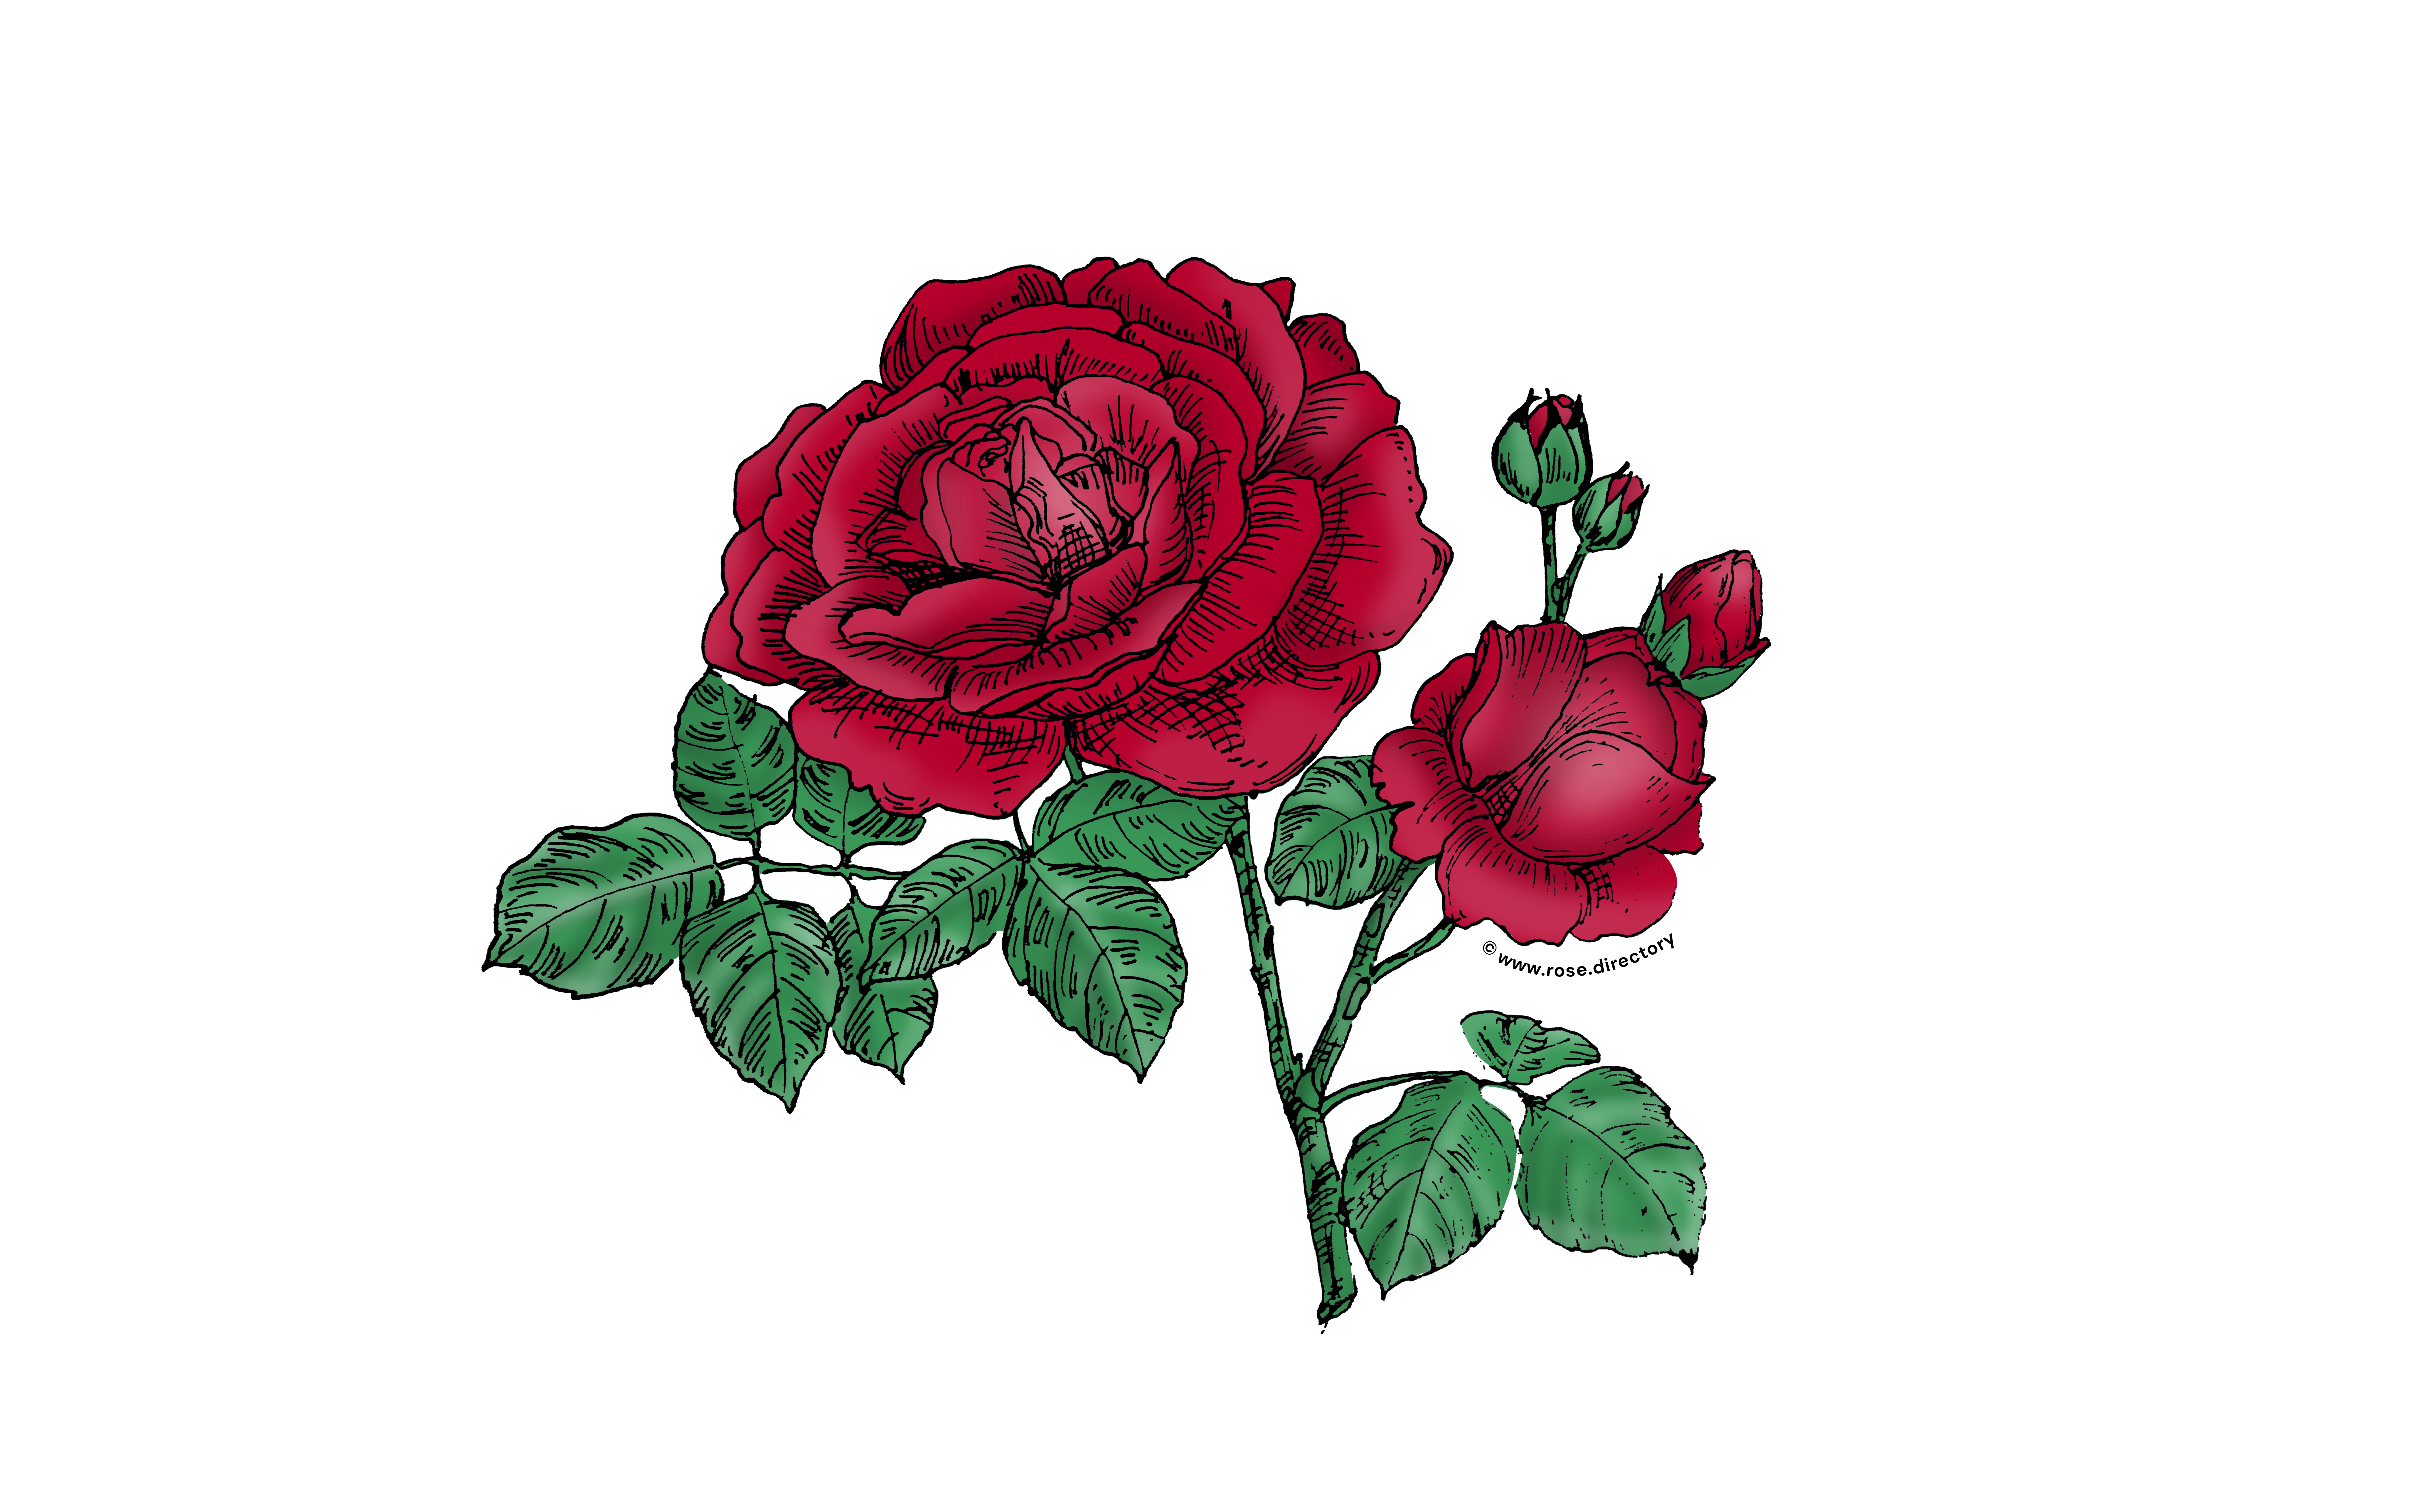 Dark Red Globular Rose Bloom Full 26-40 Petals In 3+ Rows